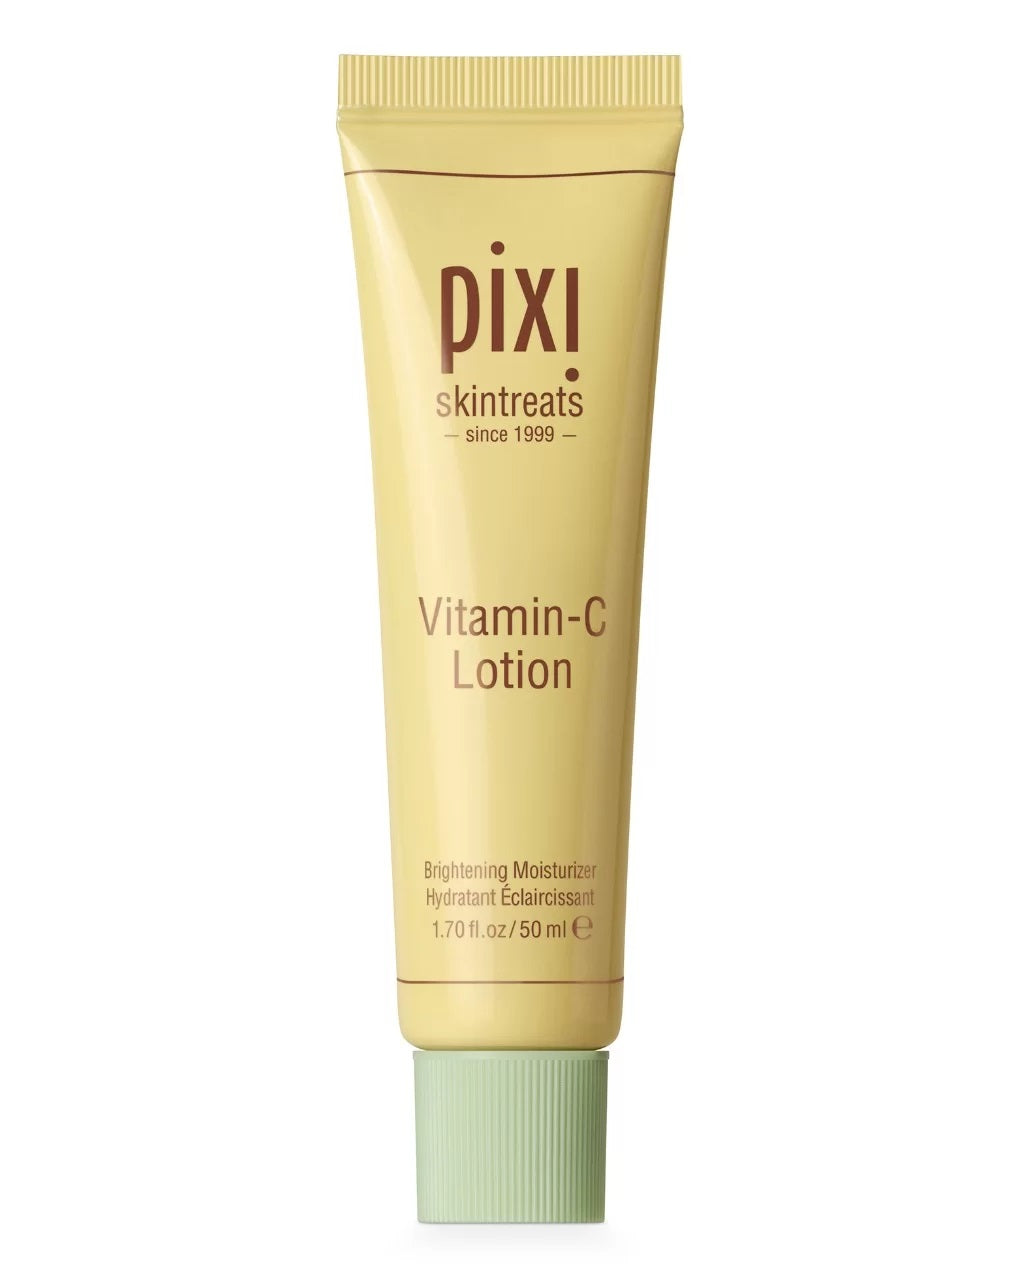 Pixi Vitamin-C Lotion 1.70 Fl.Oz / 50 Ml